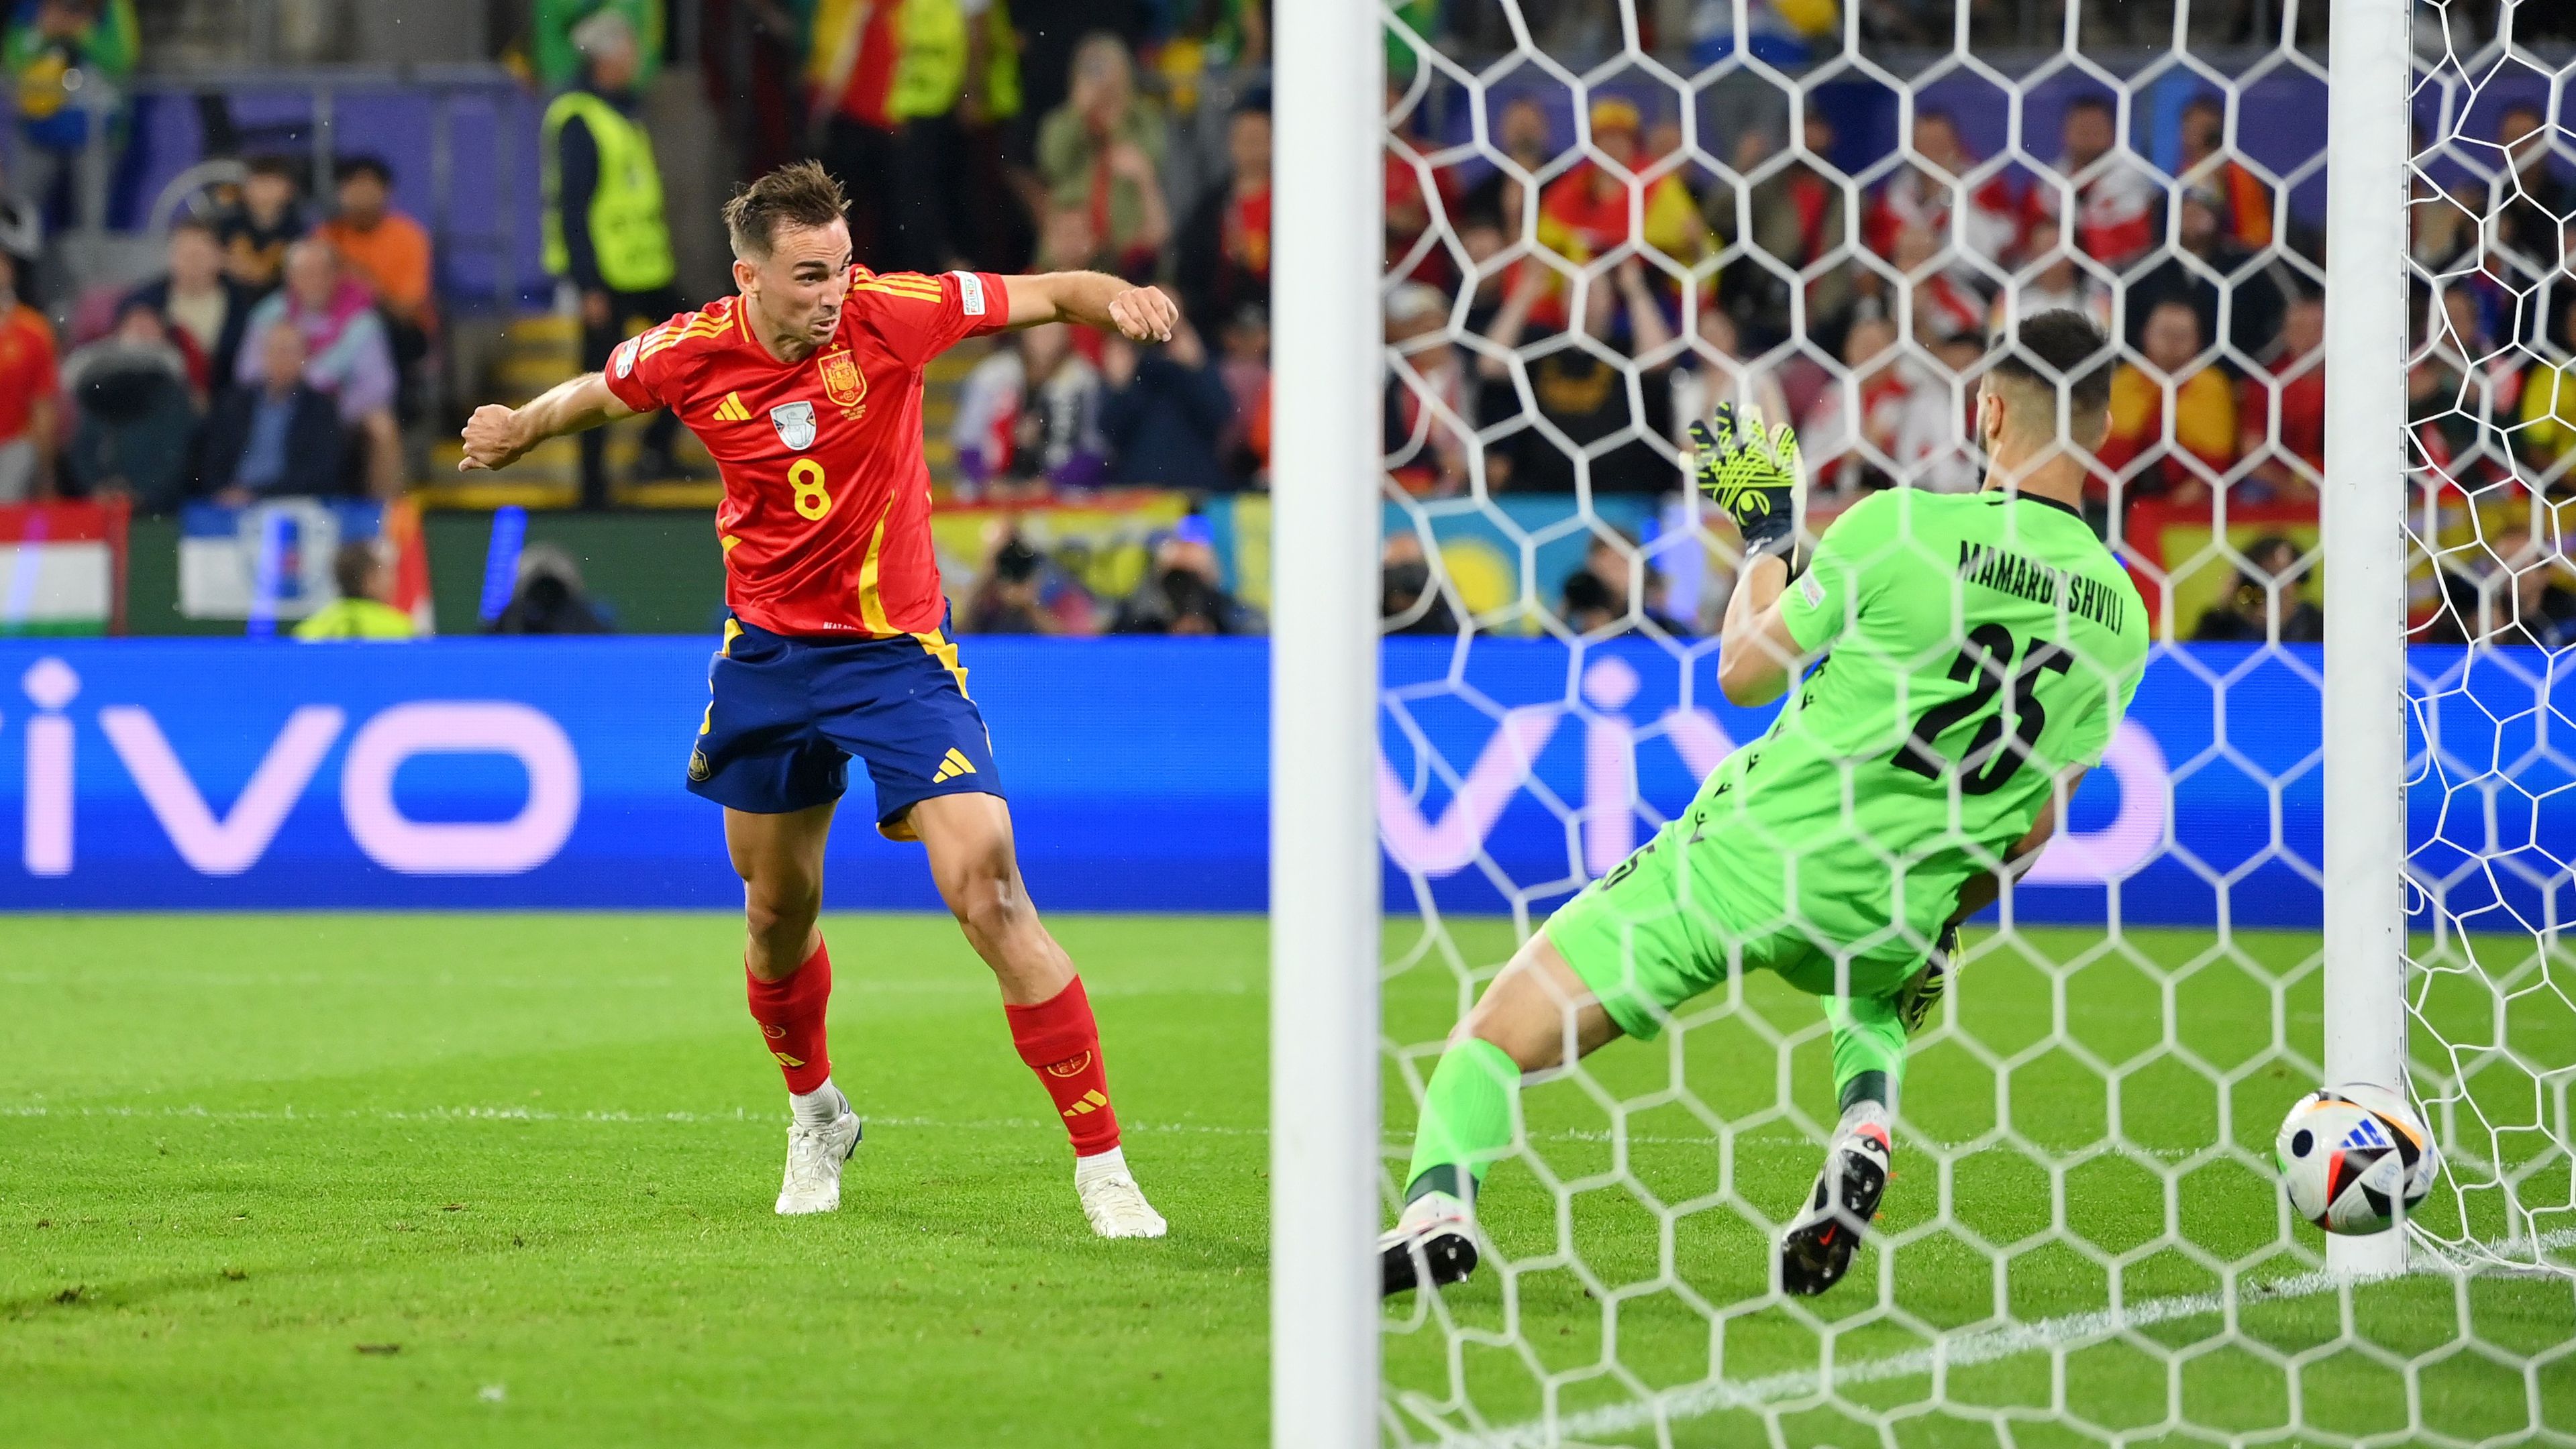 Fabián Ruiz fejes gólja után a spanyolok fordítottak, s végül magabiztosan nyertek. (Fotó: Getty Images)